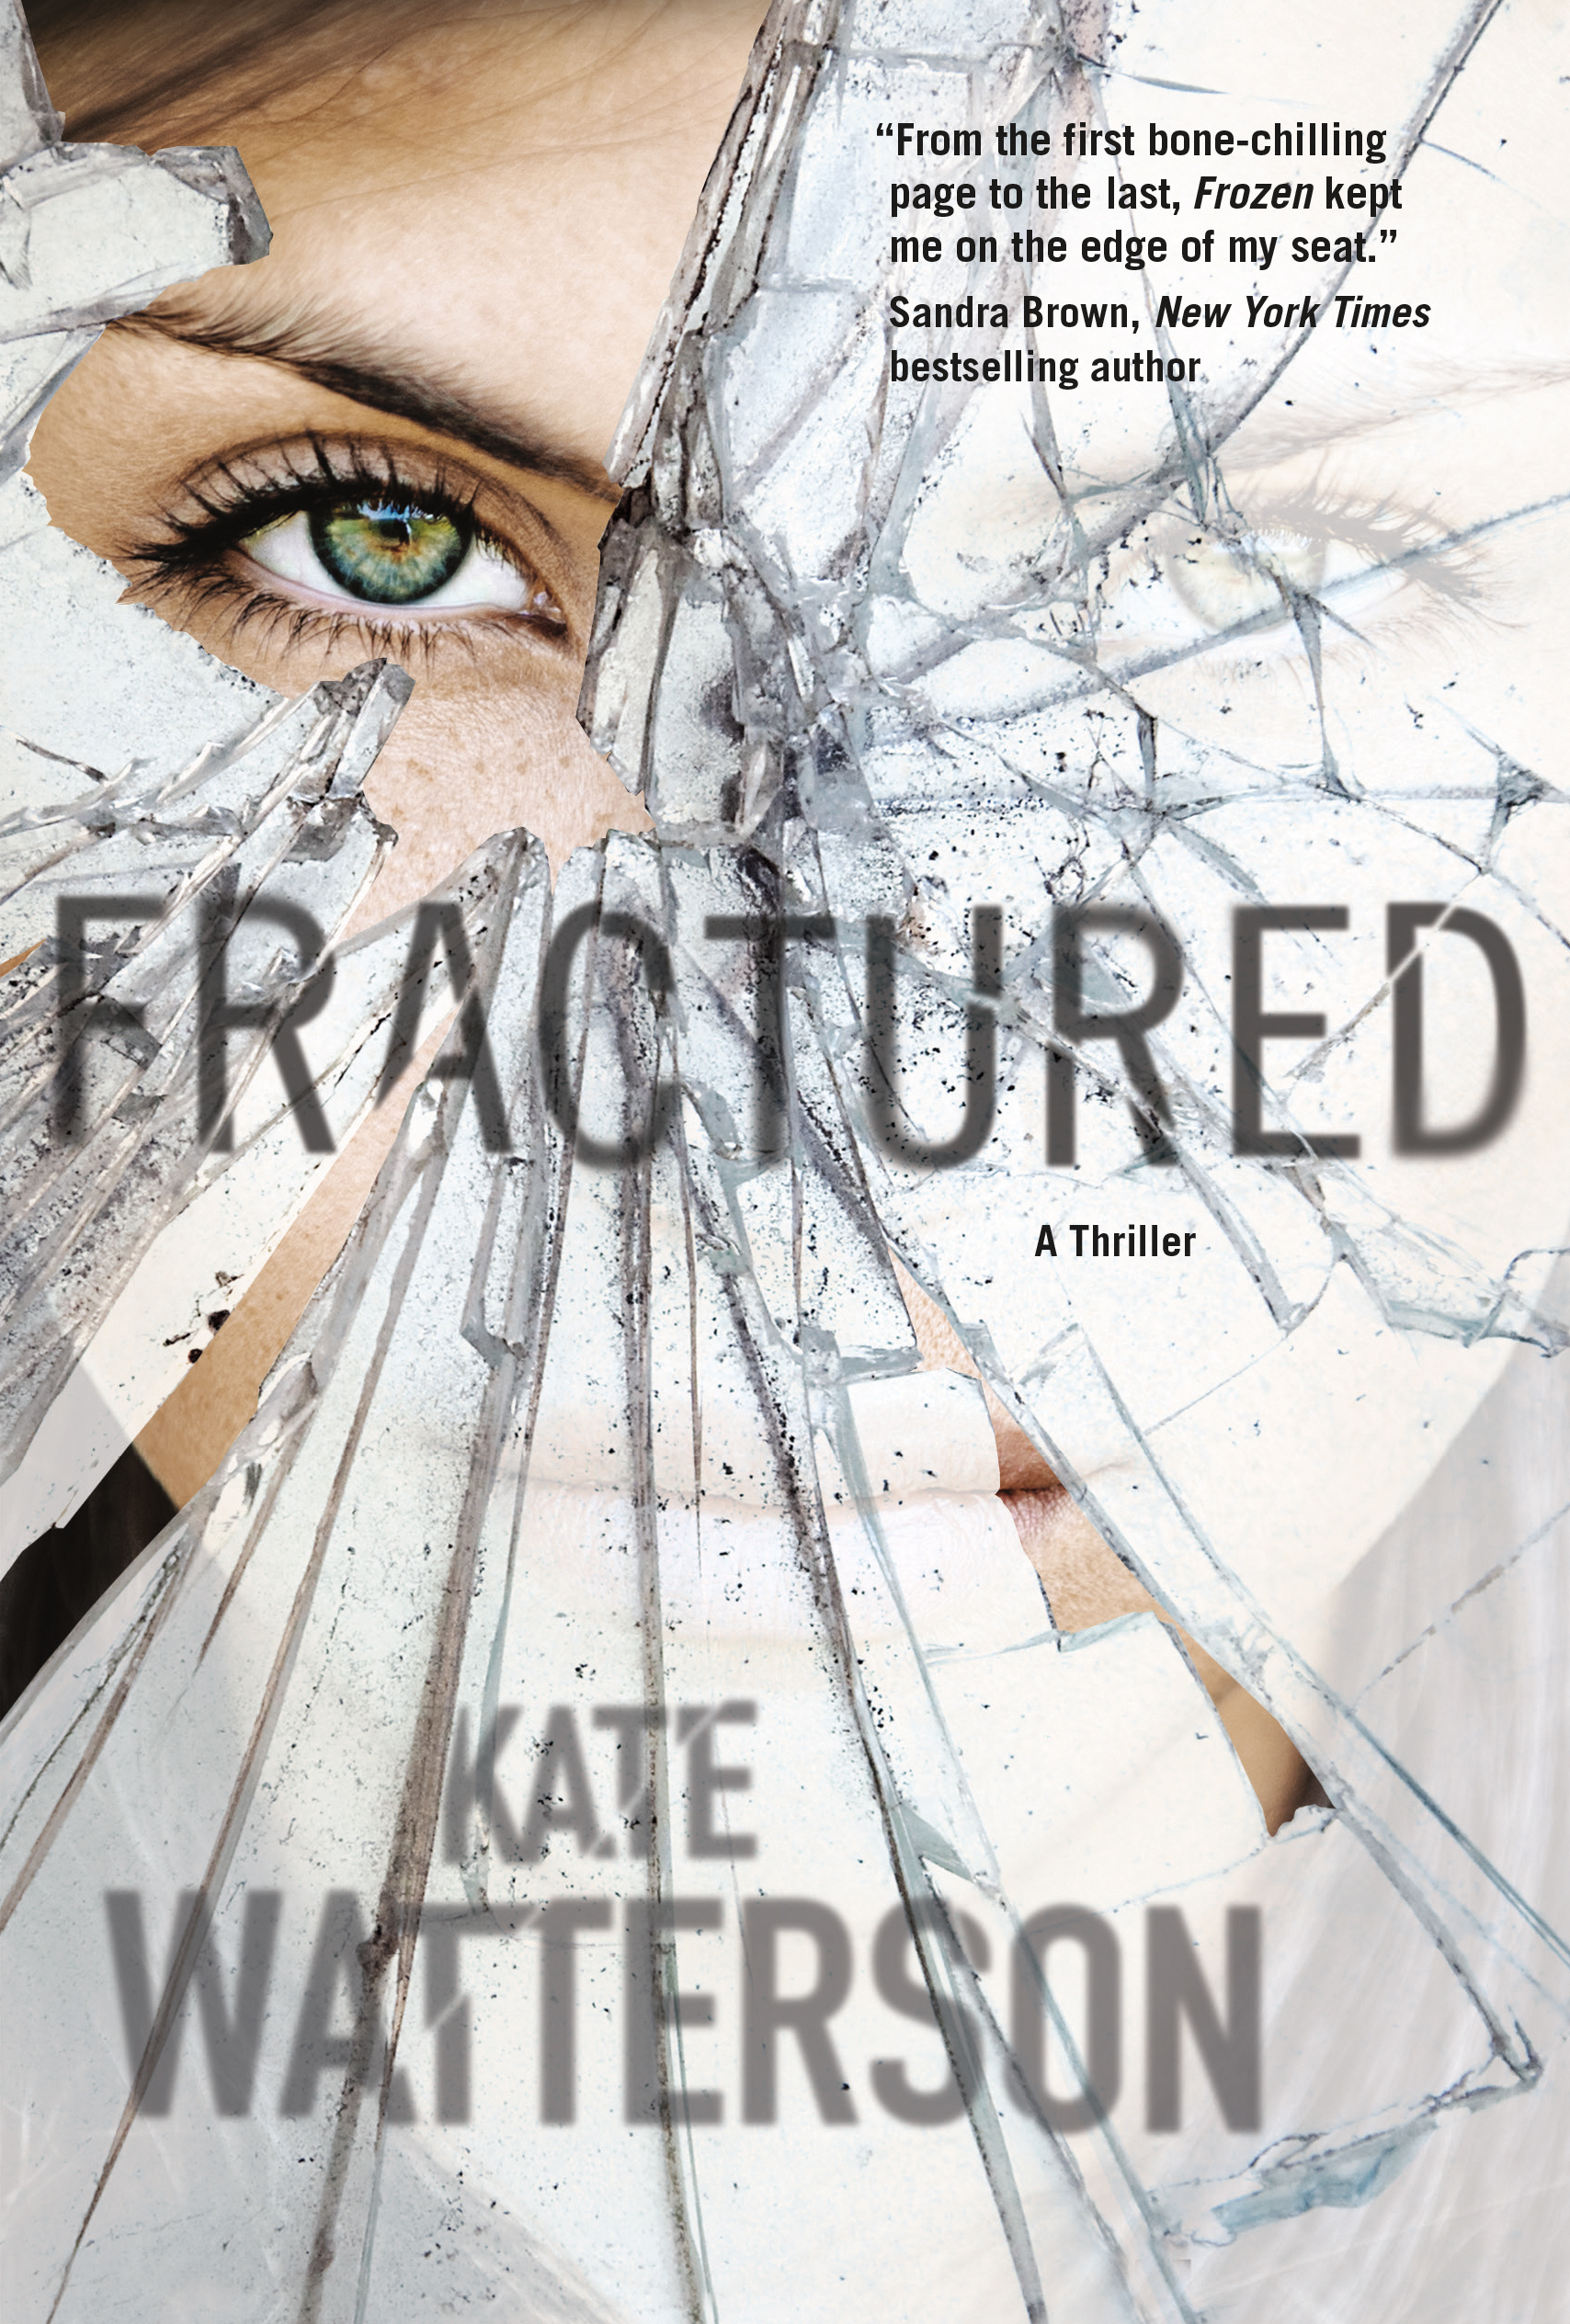 Fractured : An Ellie MacIntosh Thriller by Kate Watterson